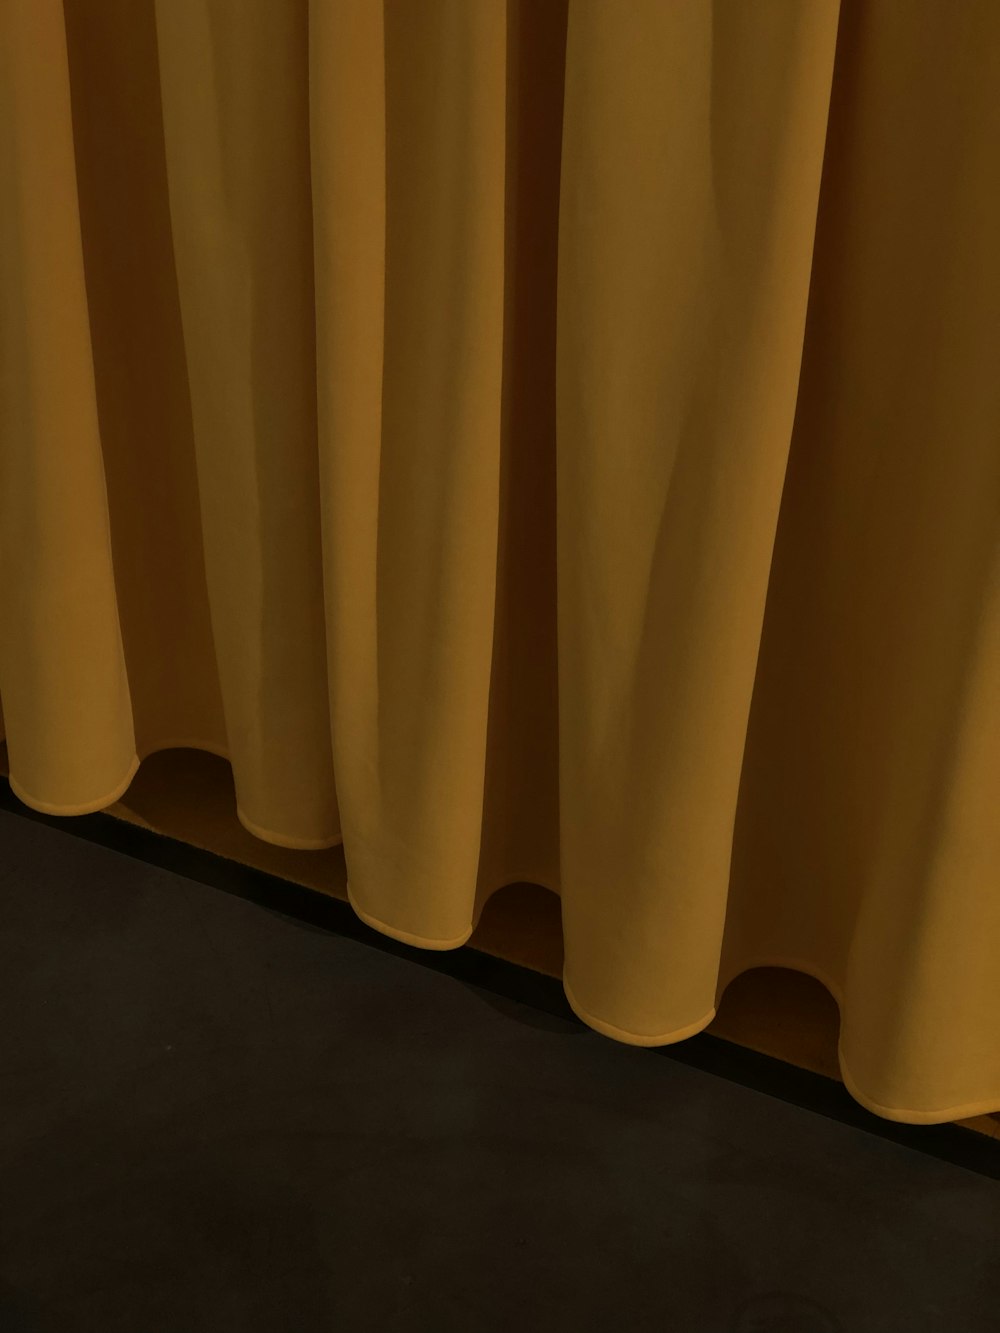 cortina amarela no piso de madeira marrom